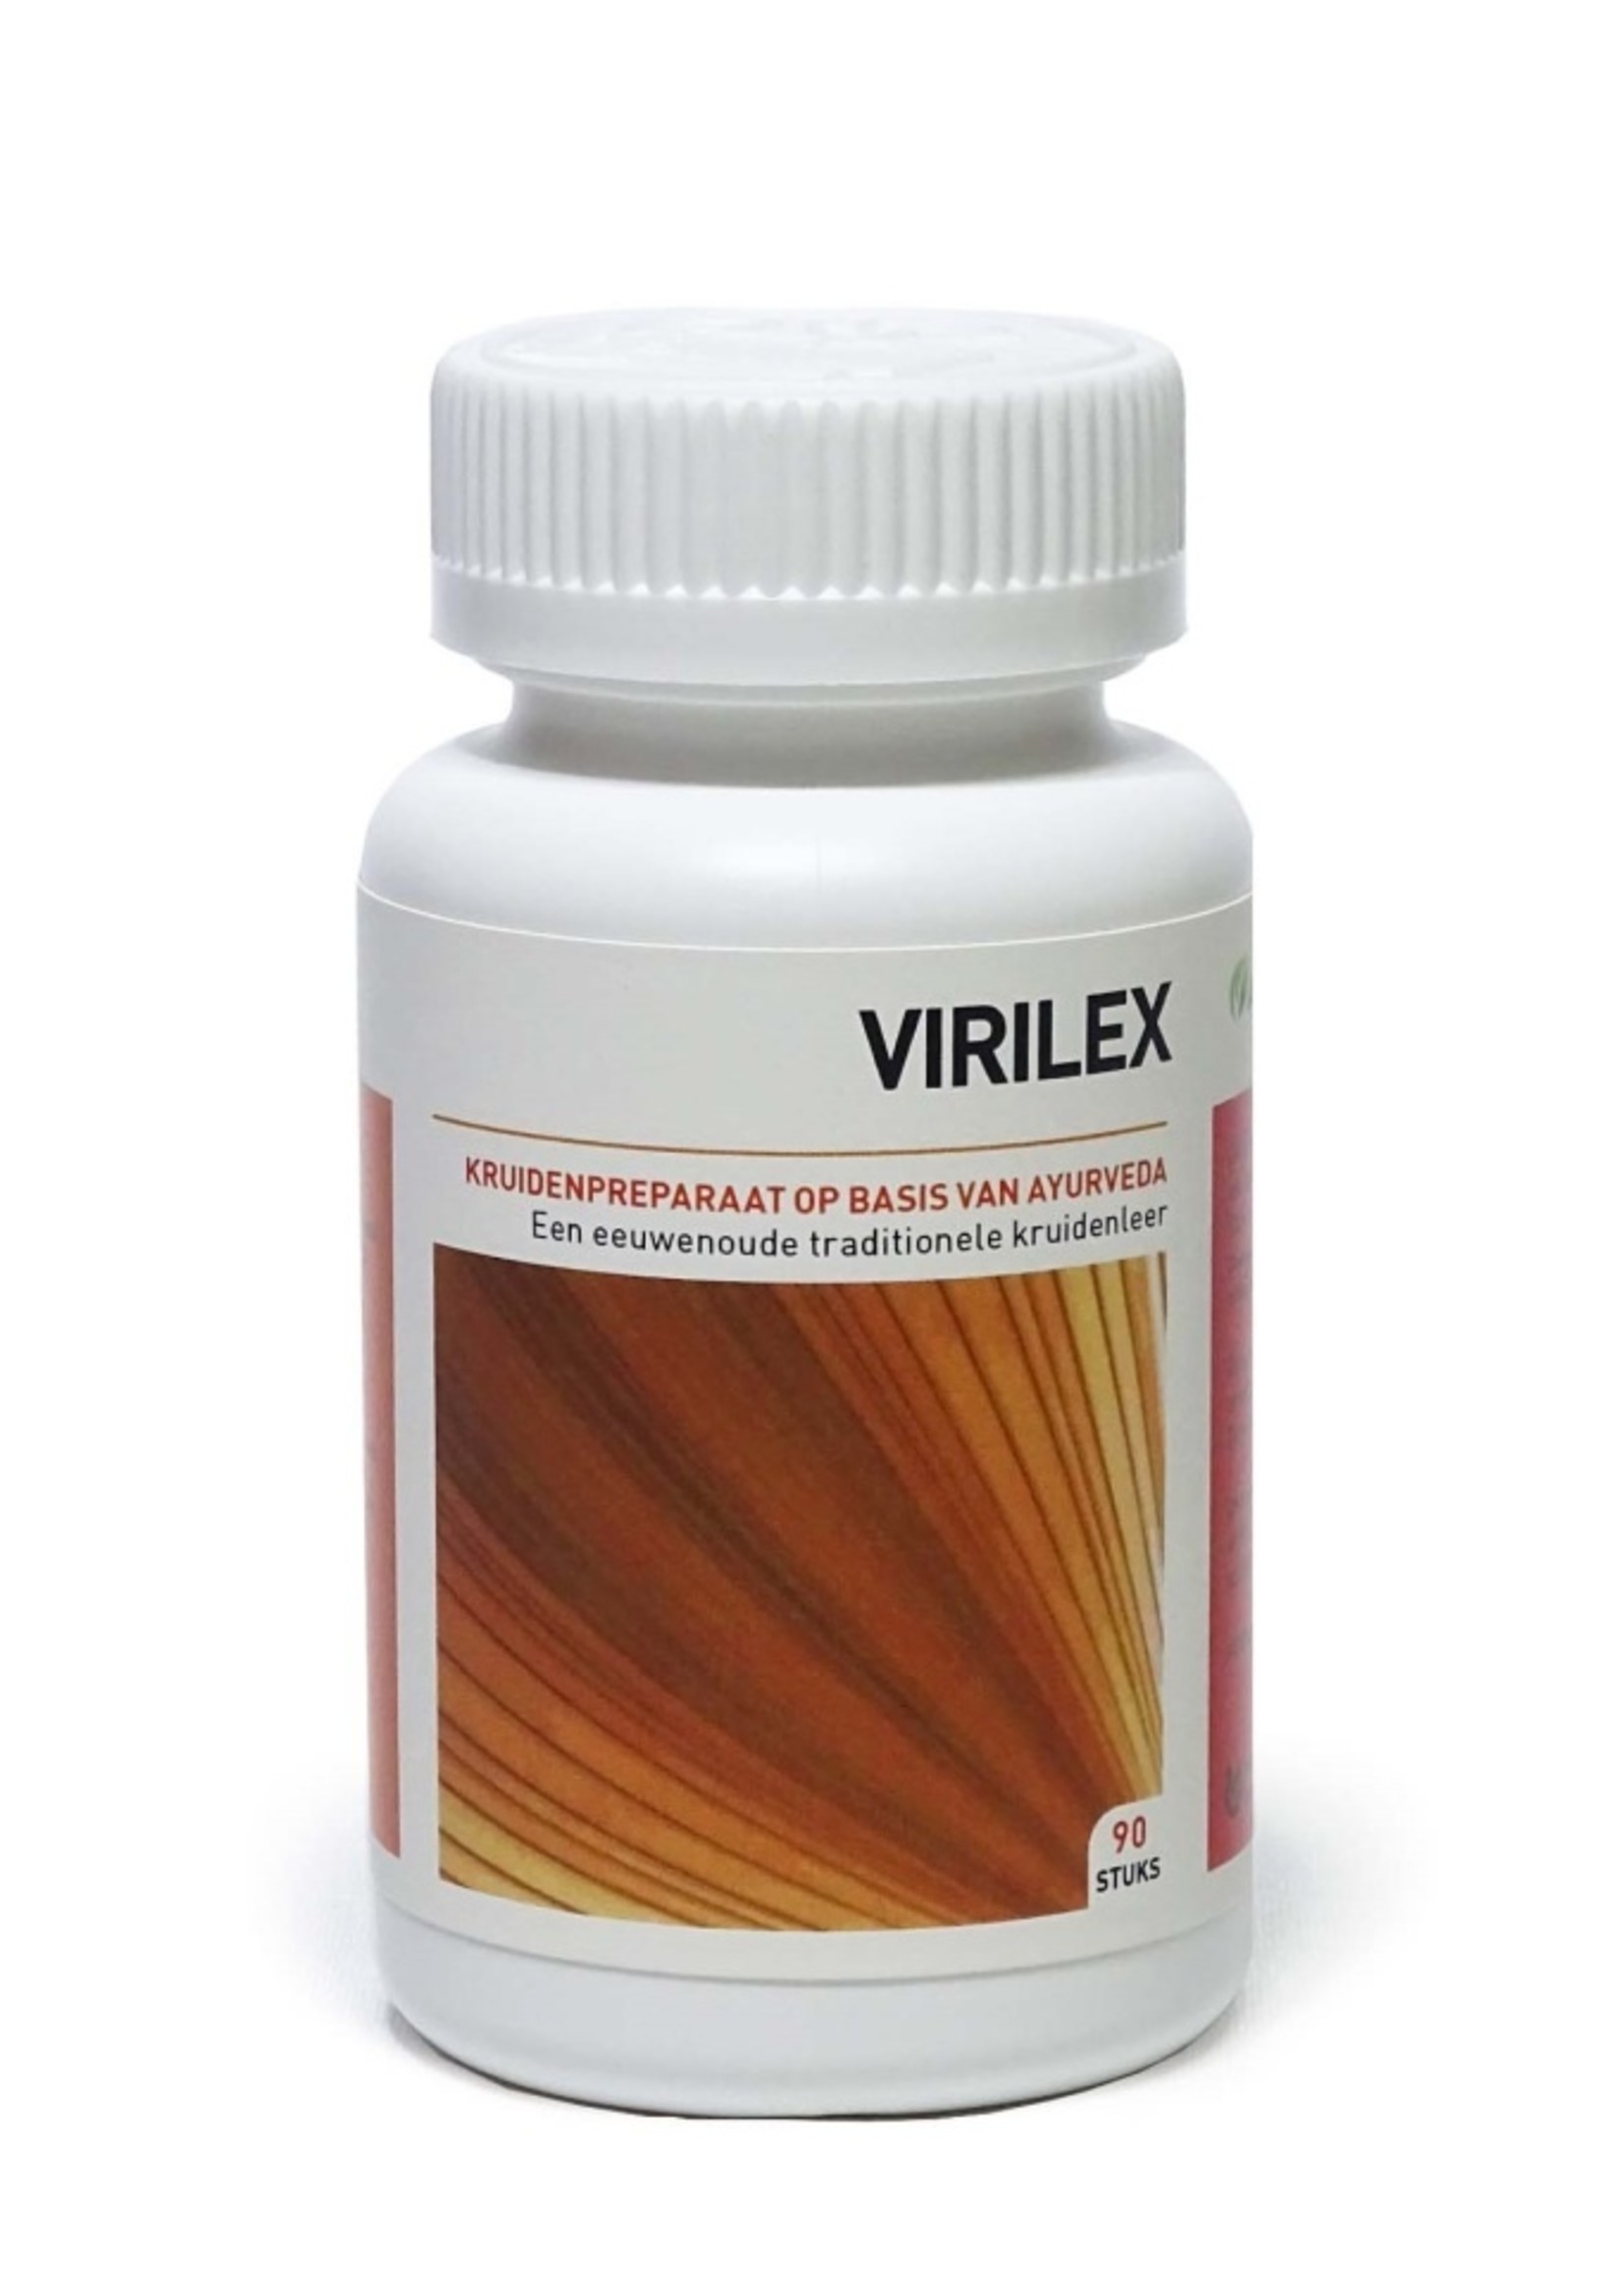 Virilex 90cap